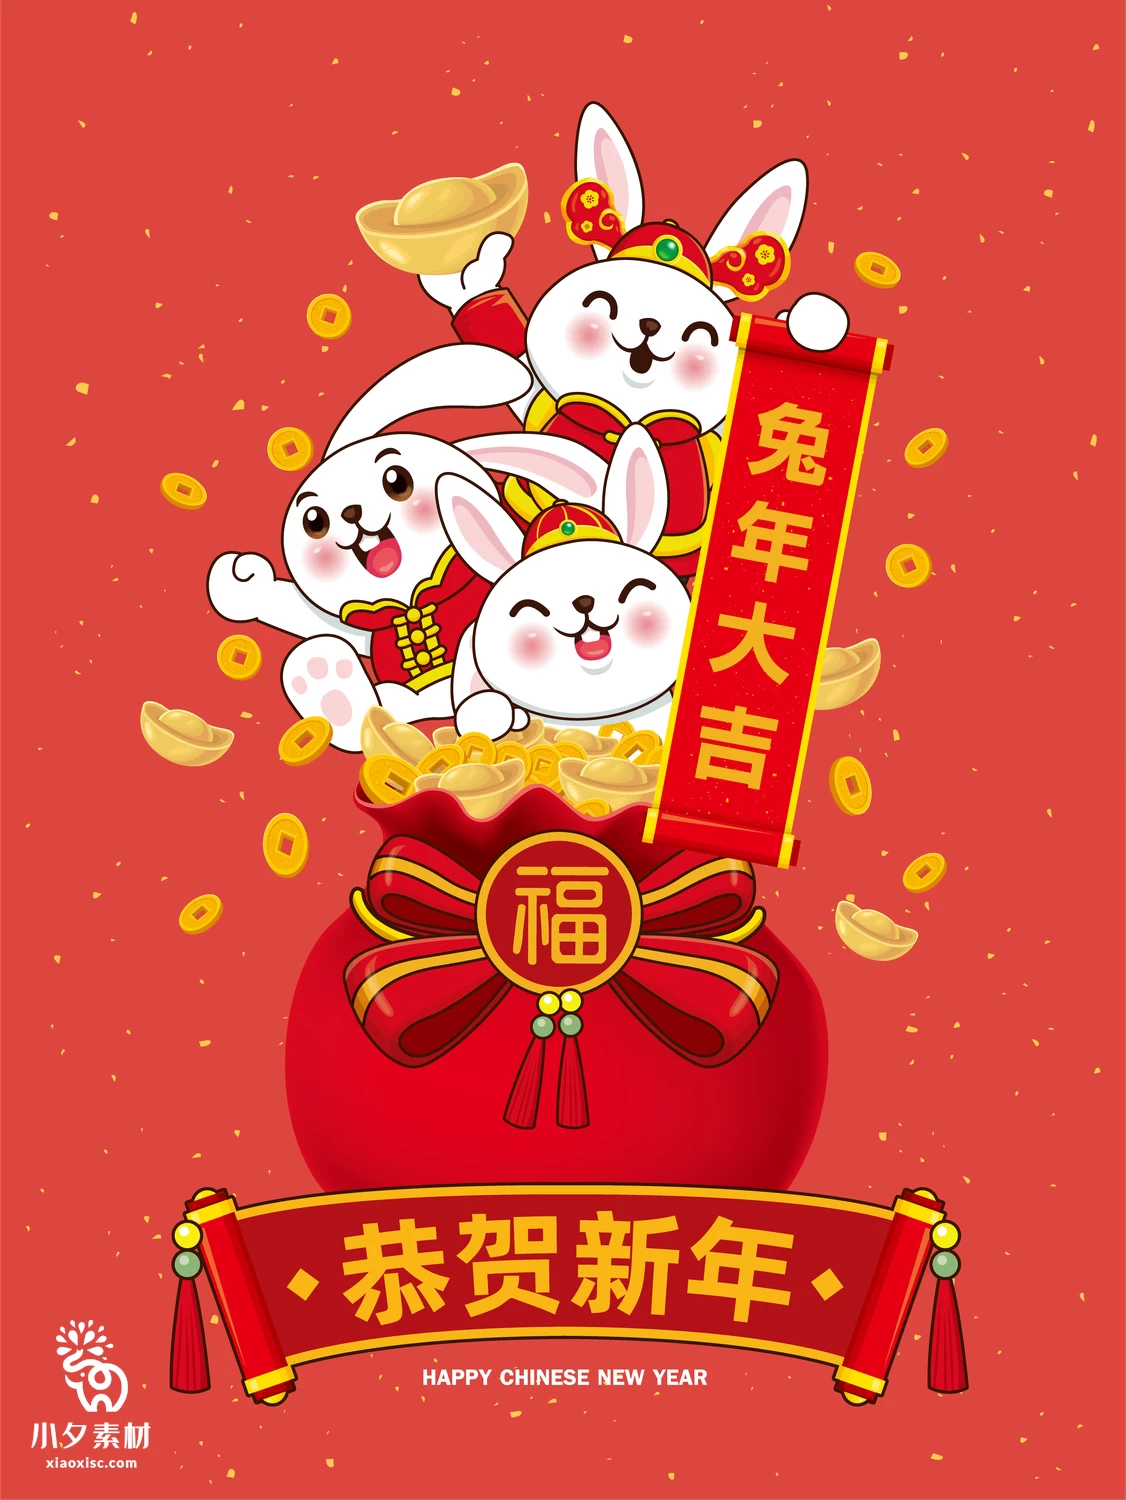 2023年兔年恭贺新春新年快乐喜庆节日宣传海报图片AI矢量设计素材【006】